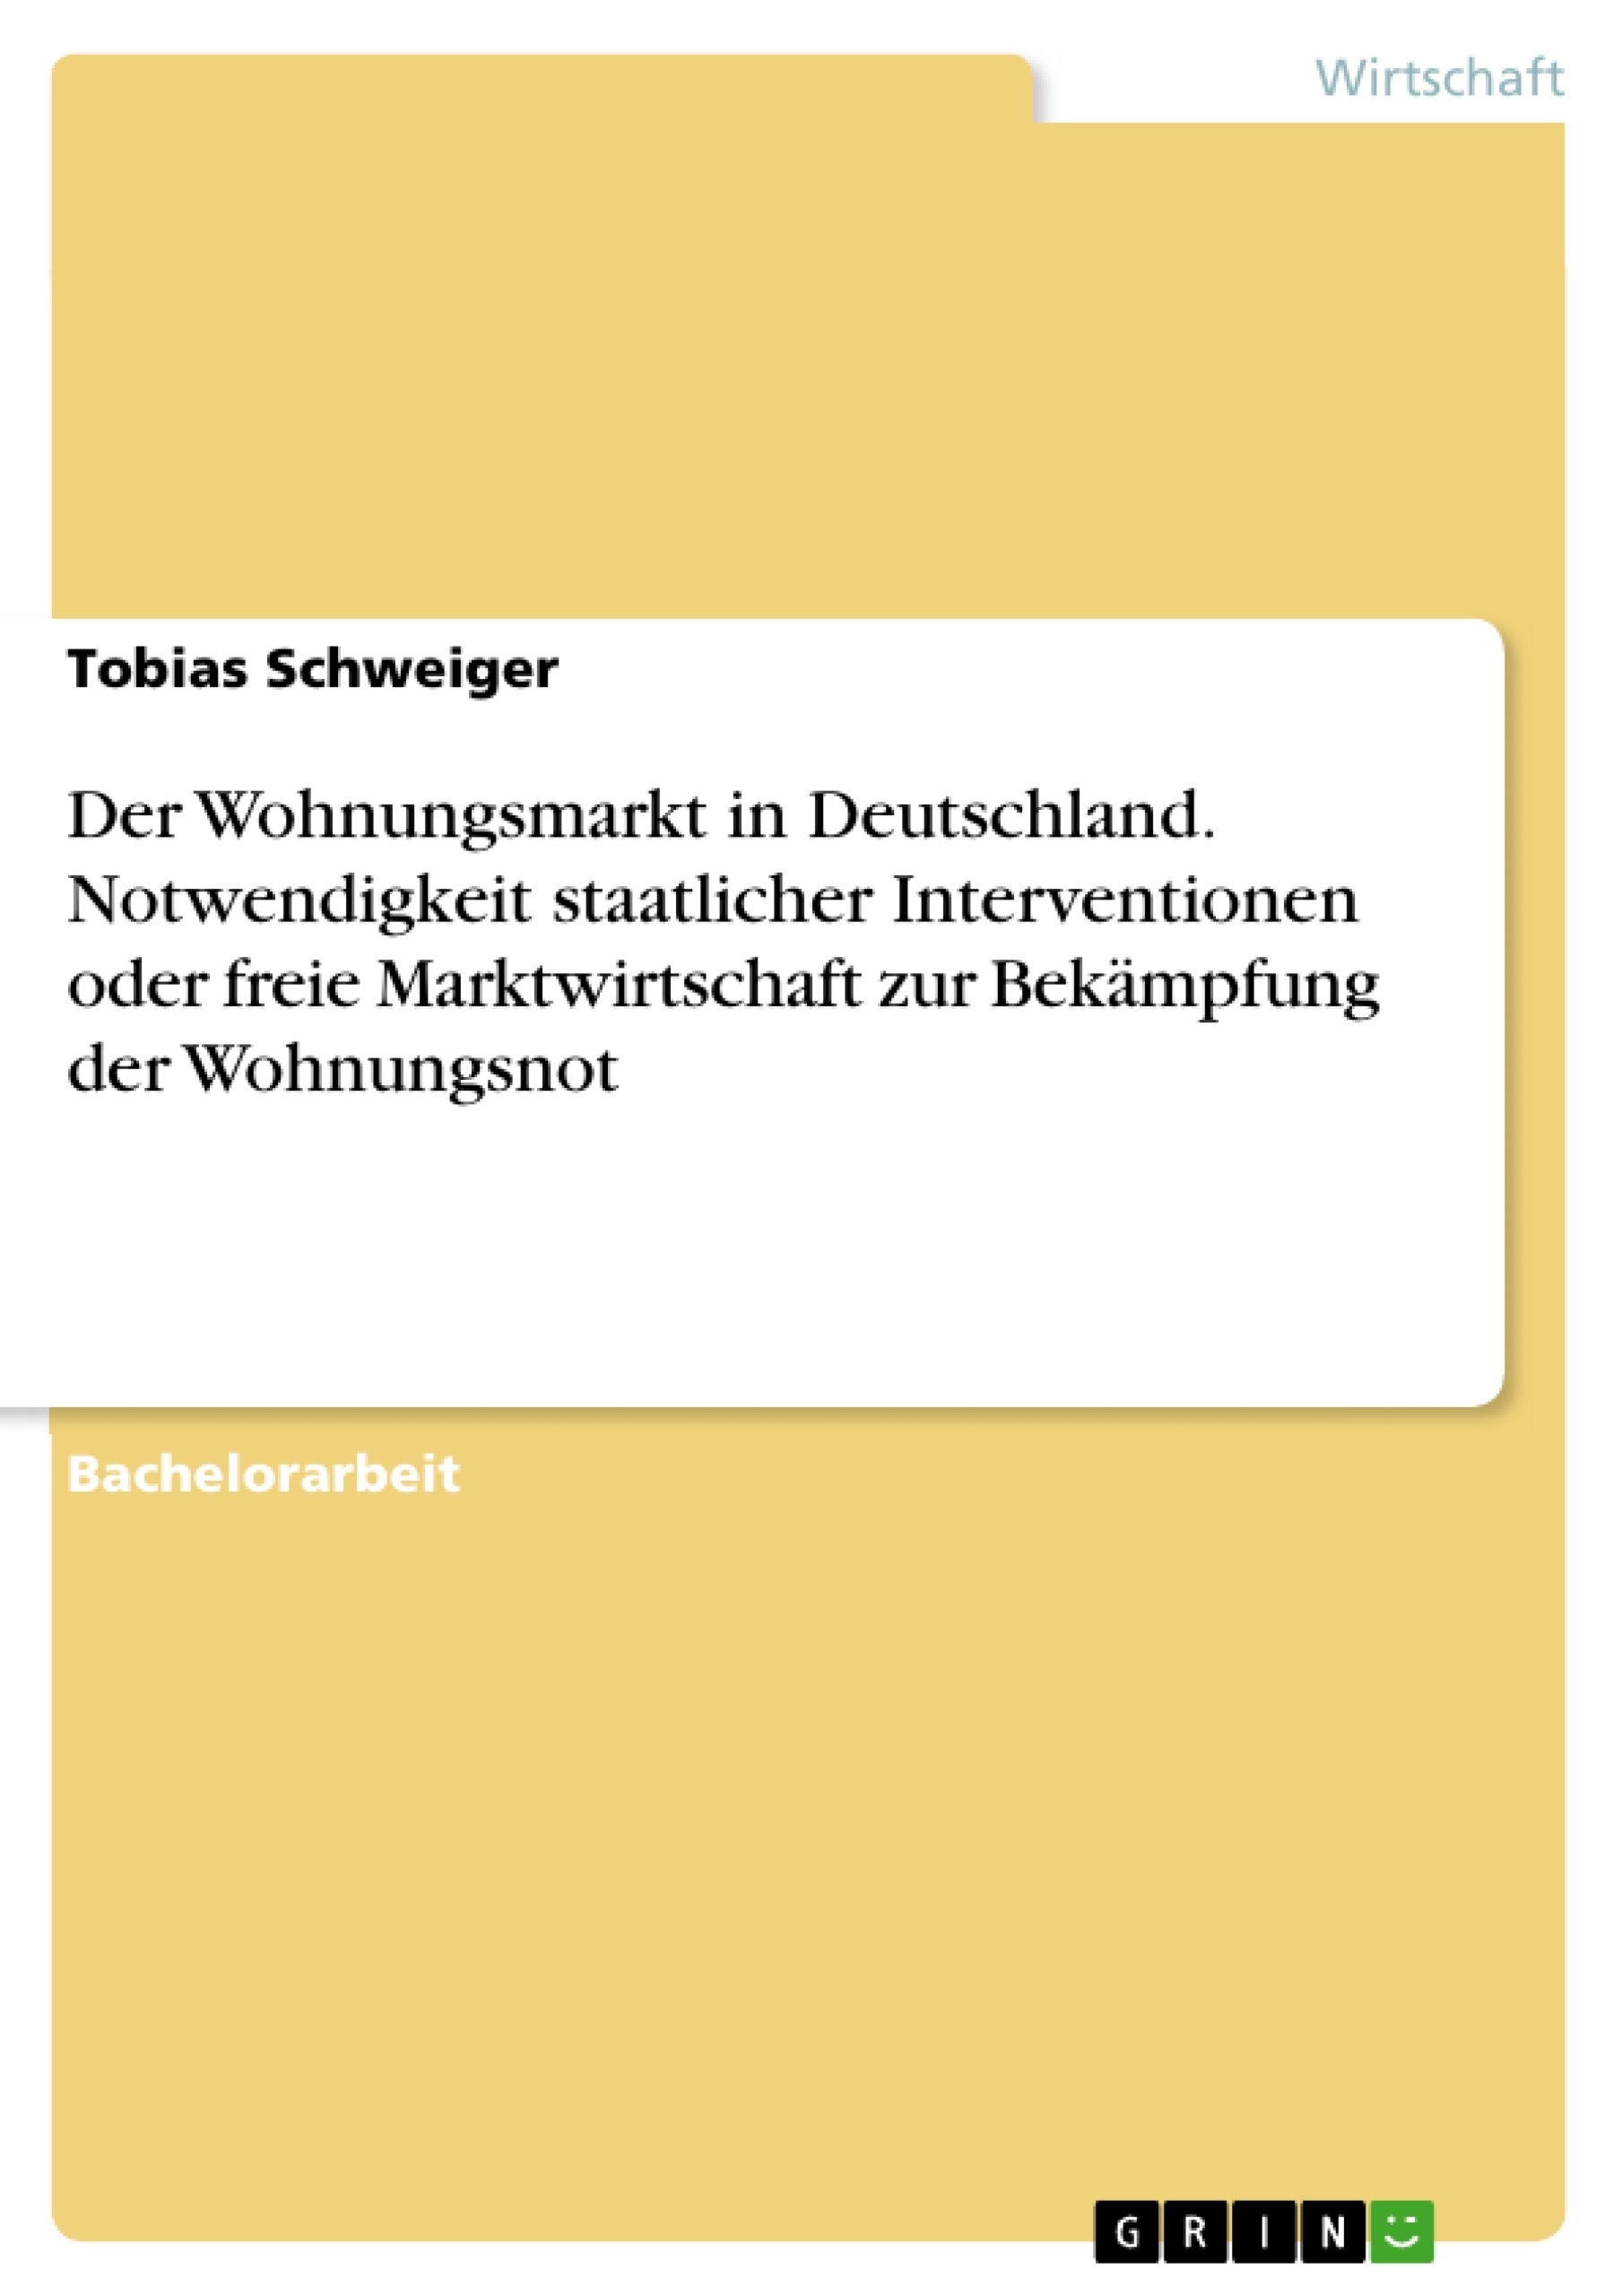 Title: Der Wohnungsmarkt in Deutschland. Notwendigkeit staatlicher Interventionen oder freie Marktwirtschaft zur Bekämpfung der Wohnungsnot